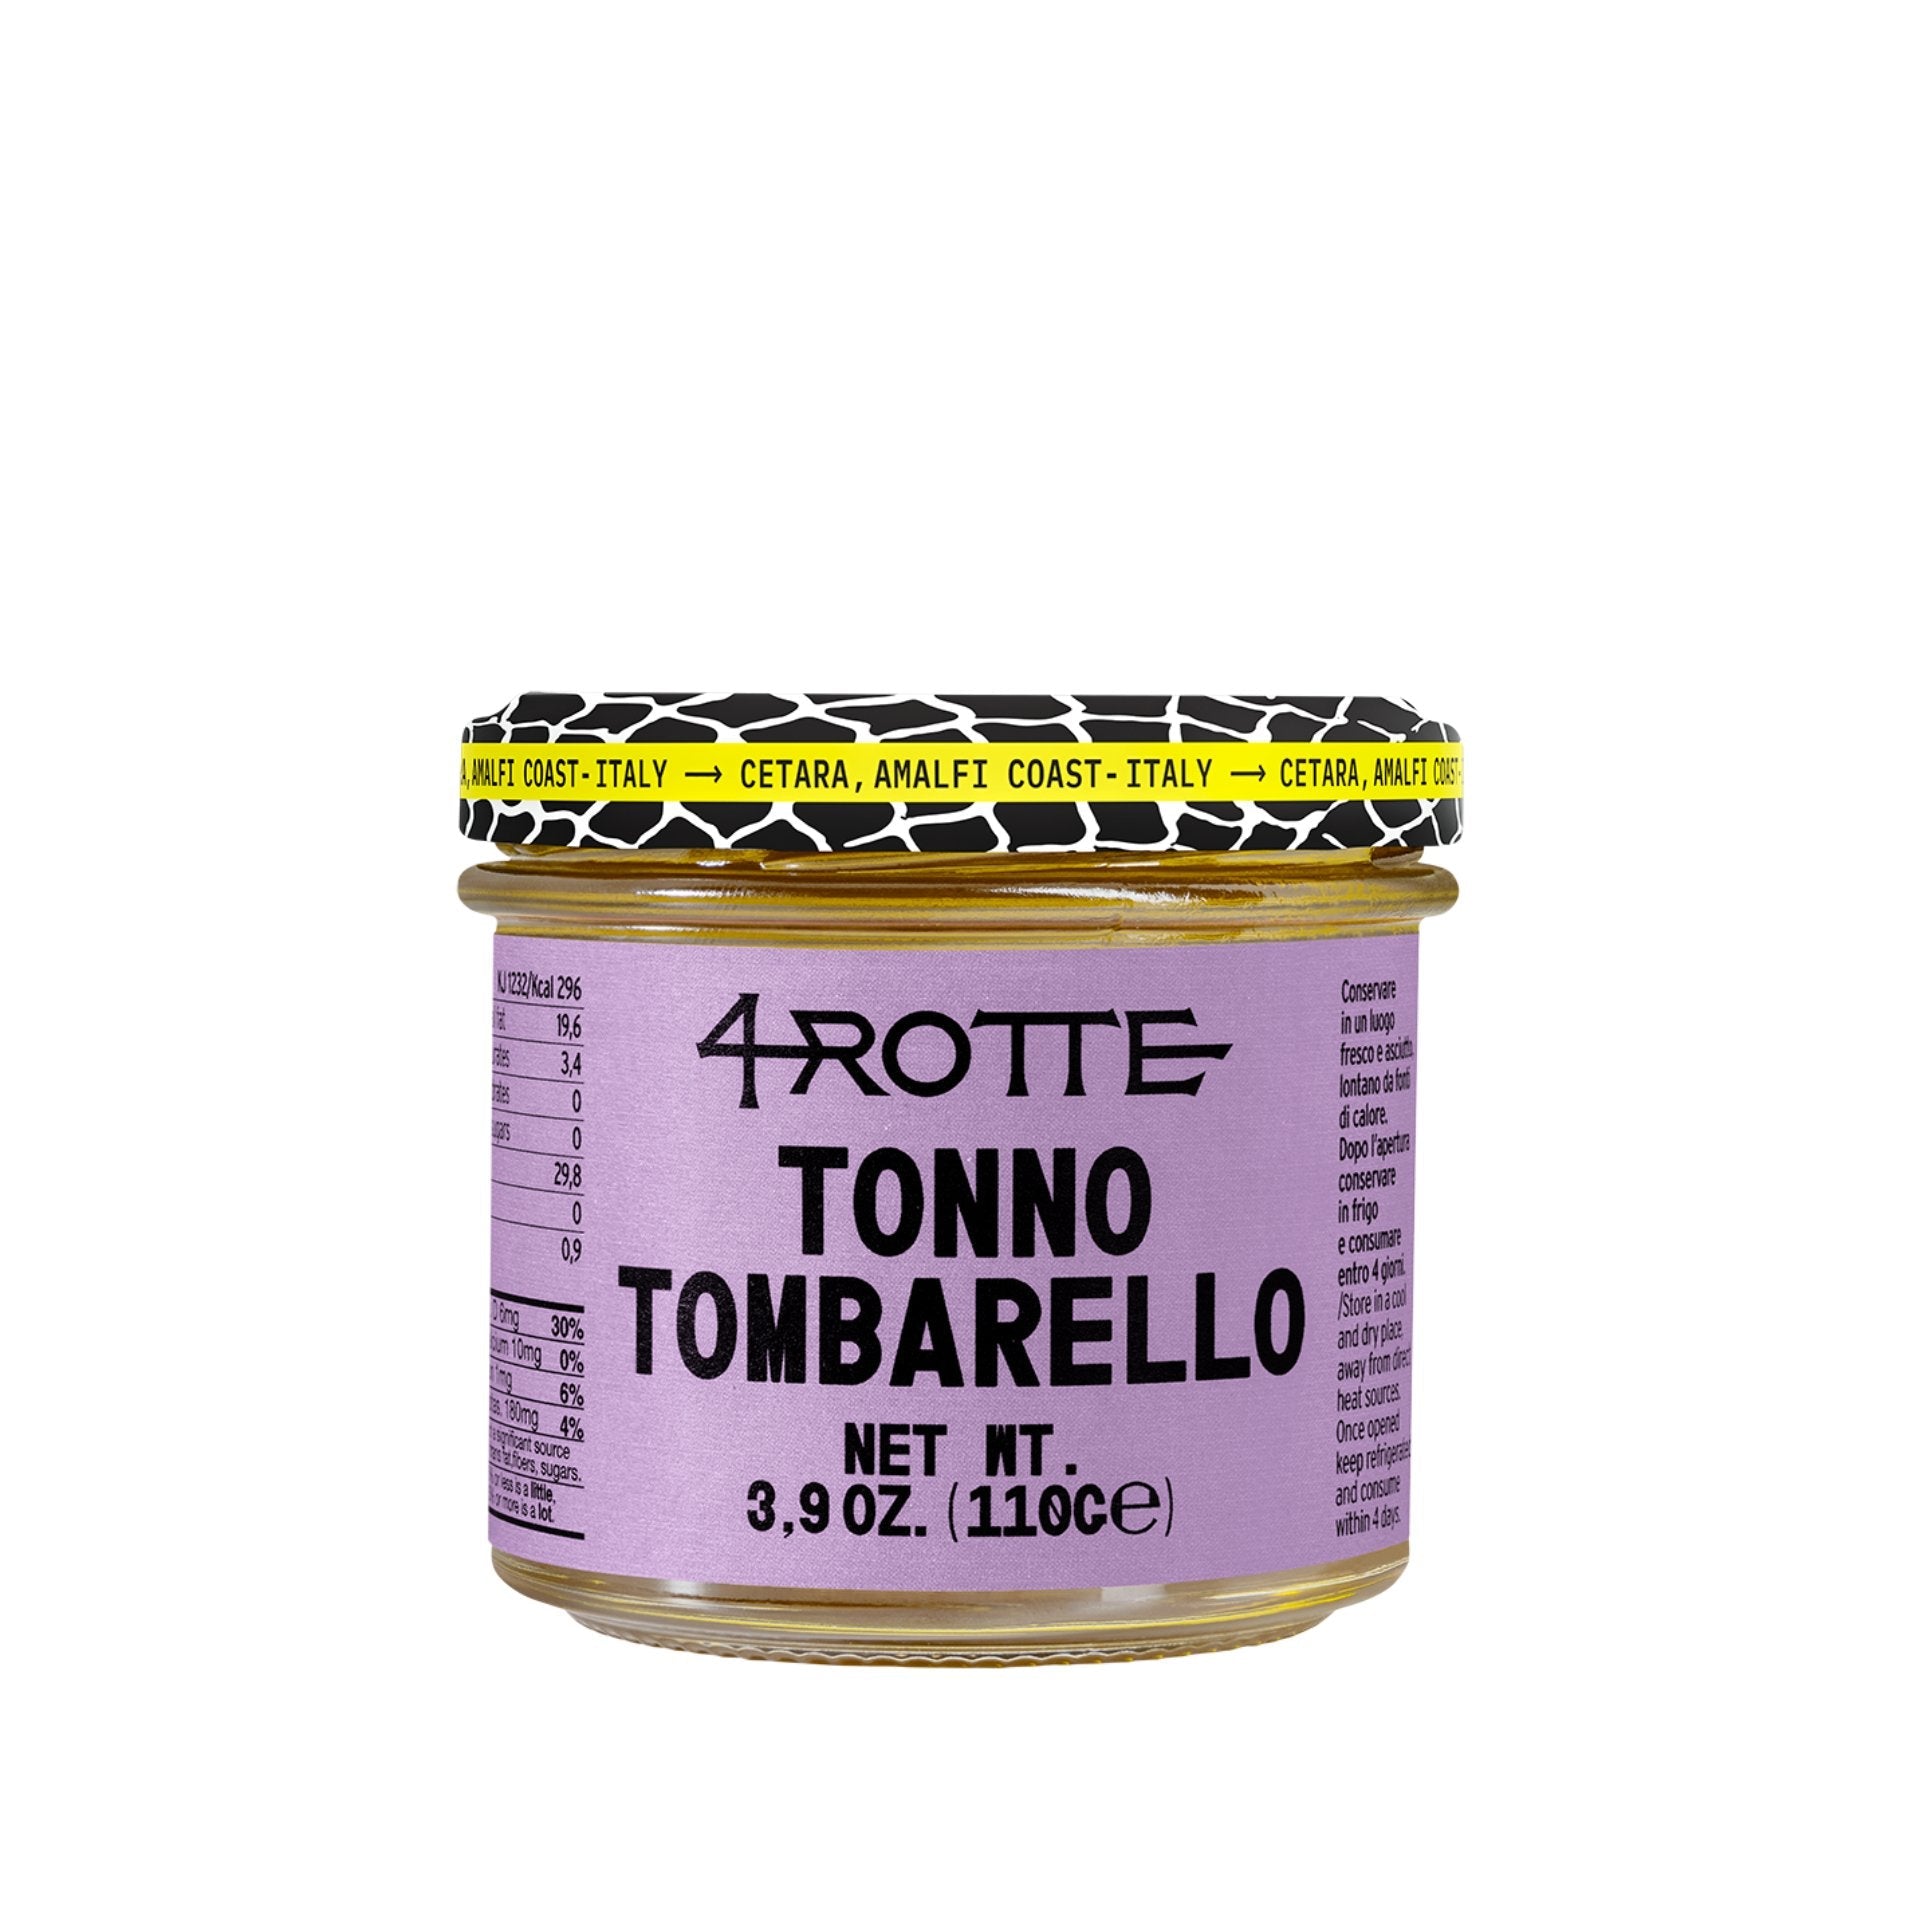 Armatore Tombarello Bullet Tuna Fillets in Olive Oil 110g Feast Italy